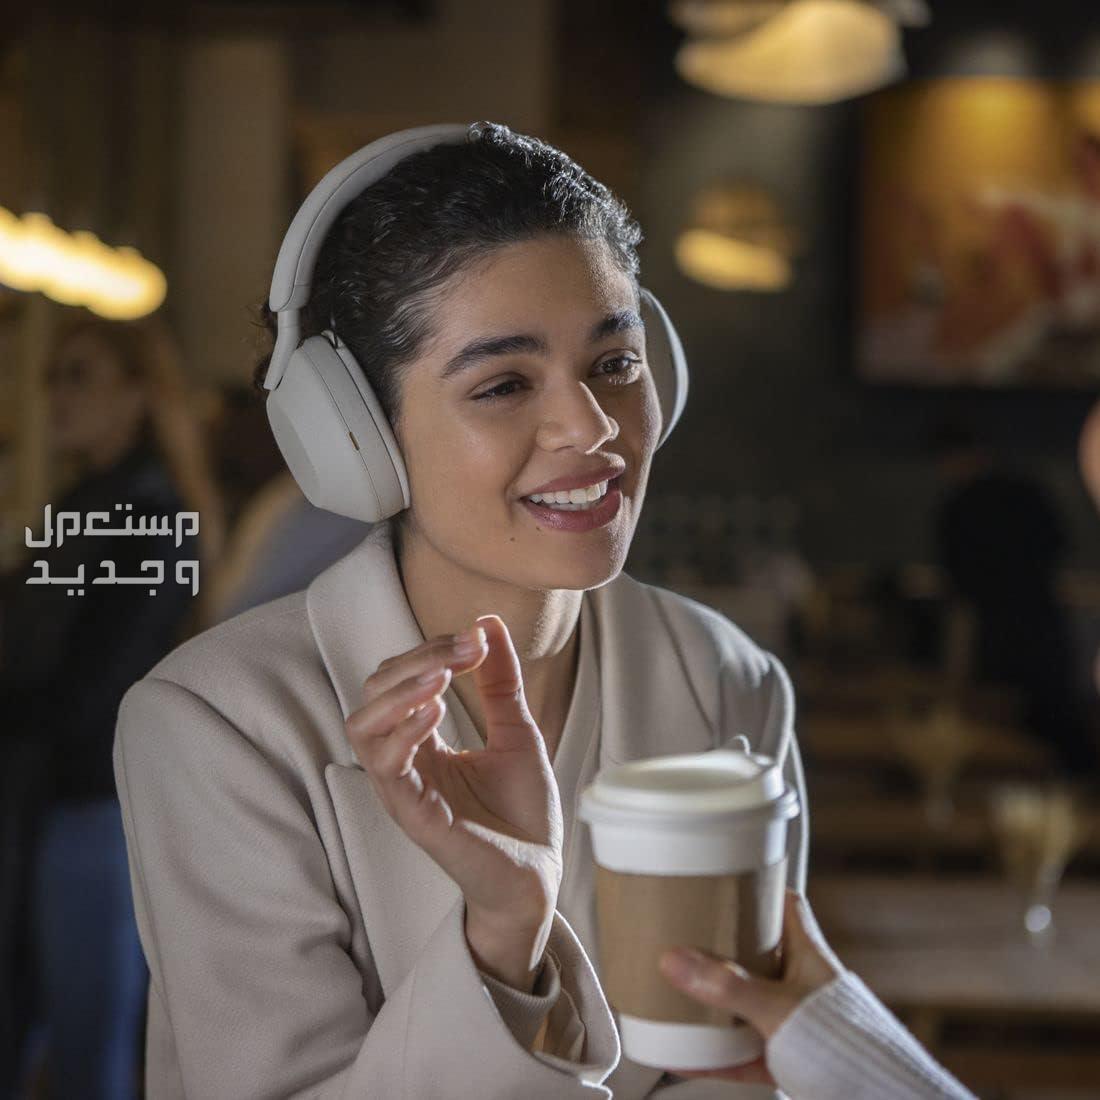 سماعة سوني 5 بتقنية إلغاء الضوضاء المطوّرة  السعر والمميزات الفائقة في المغرب سماعة سوني 5 جودة مكالمات رائدة